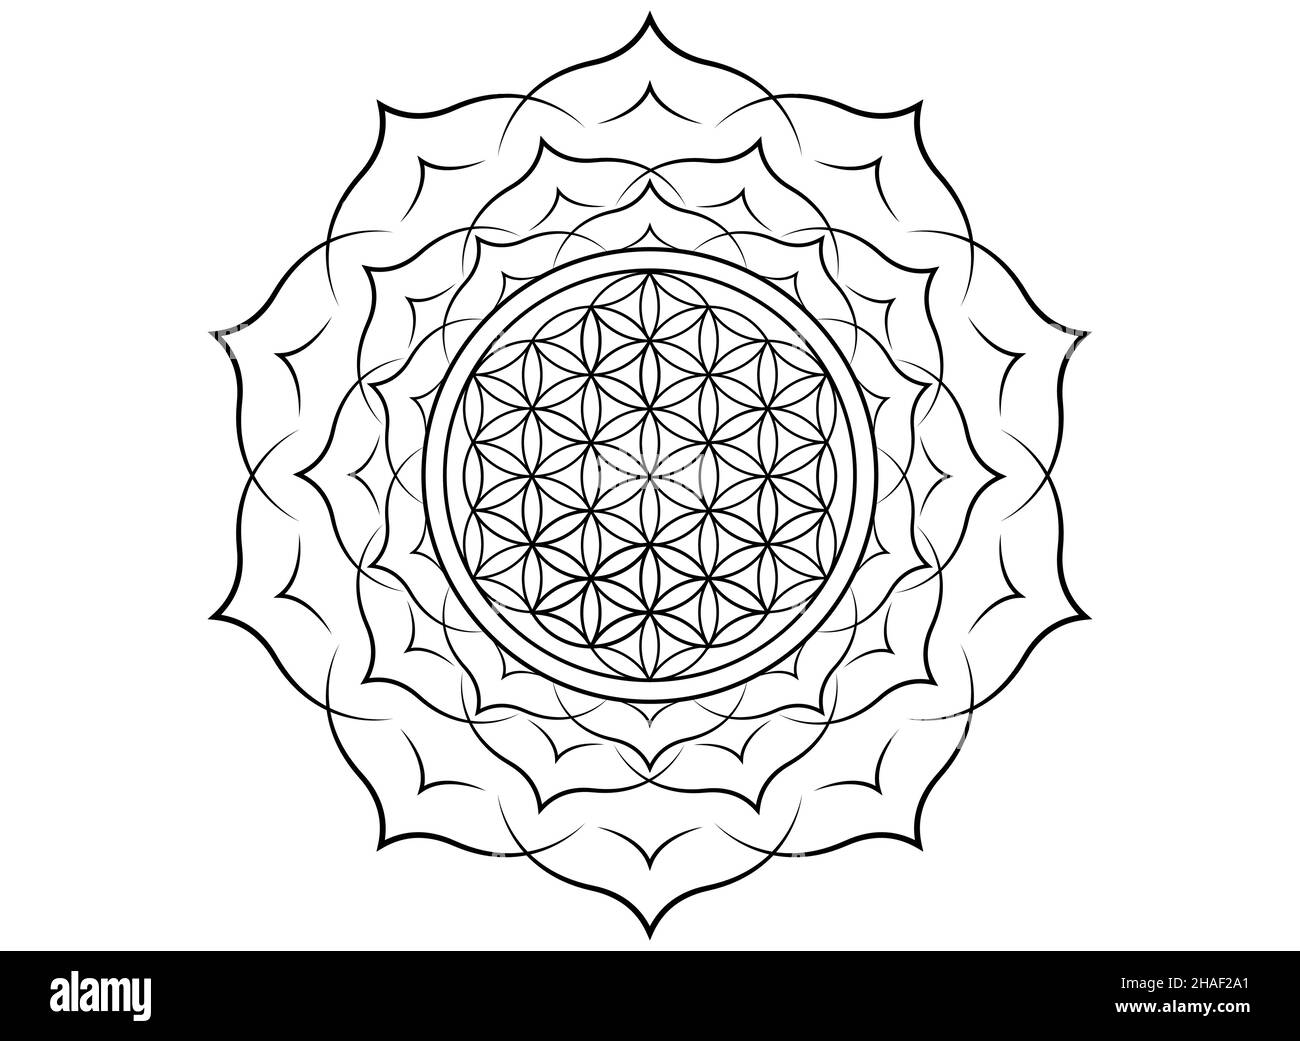 Fiore di vita, Yantra Mandala nel fiore di loto, geometria sacra. Tatuaggio nero stampato simbolo di armonia ed equilibrio. Talismano mistica, isolata Illustrazione Vettoriale